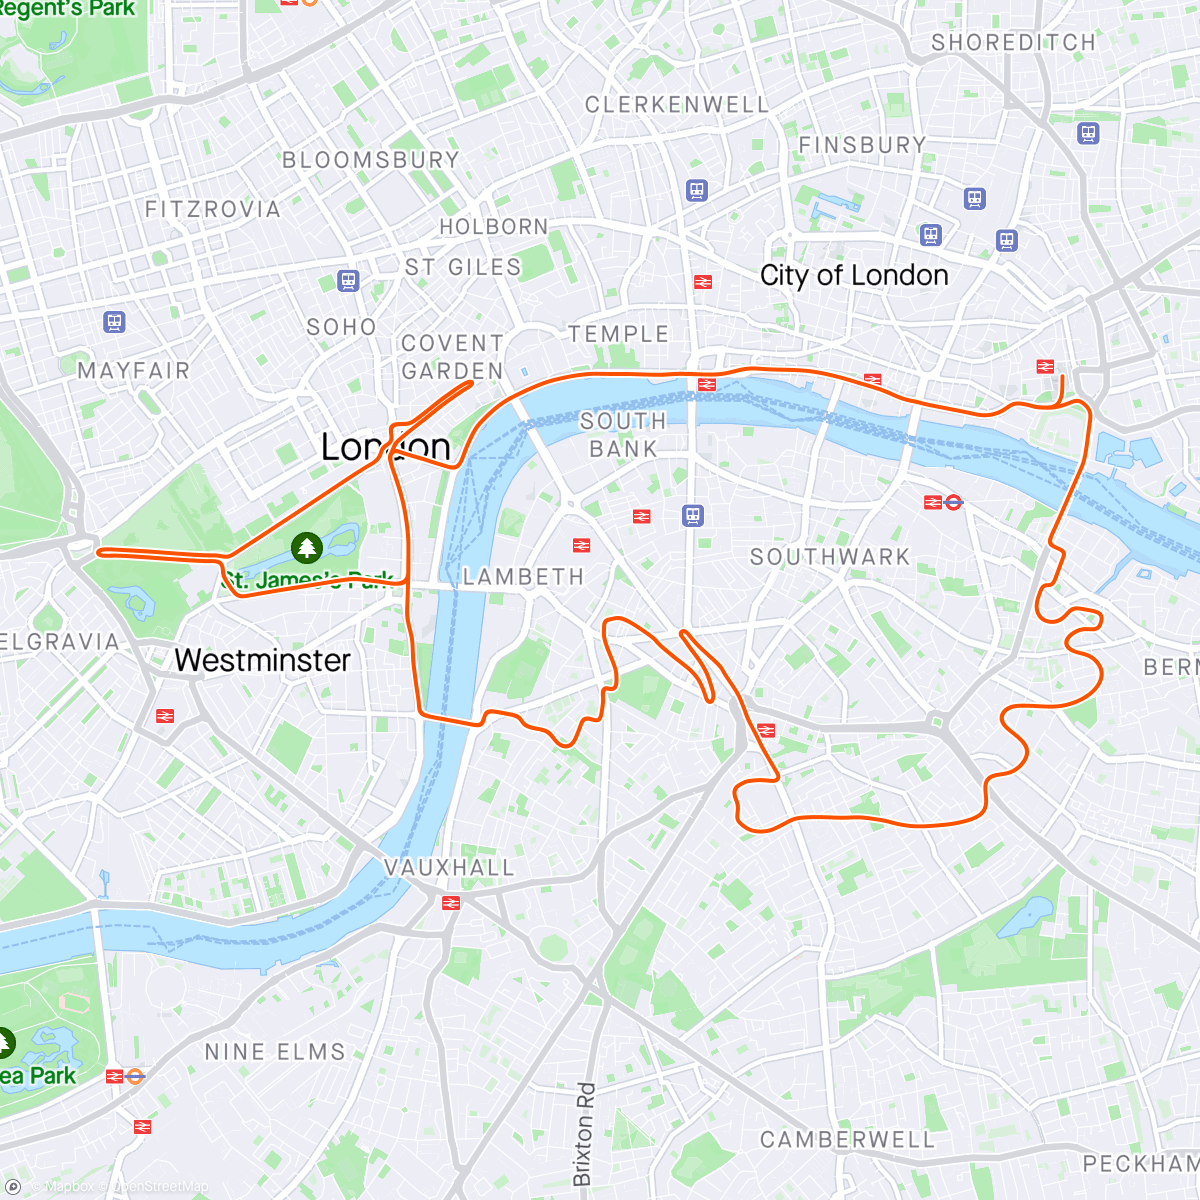 「Zwift - Race: Big Ride Series con PETA-Z (B) on London 8 in London」活動的地圖